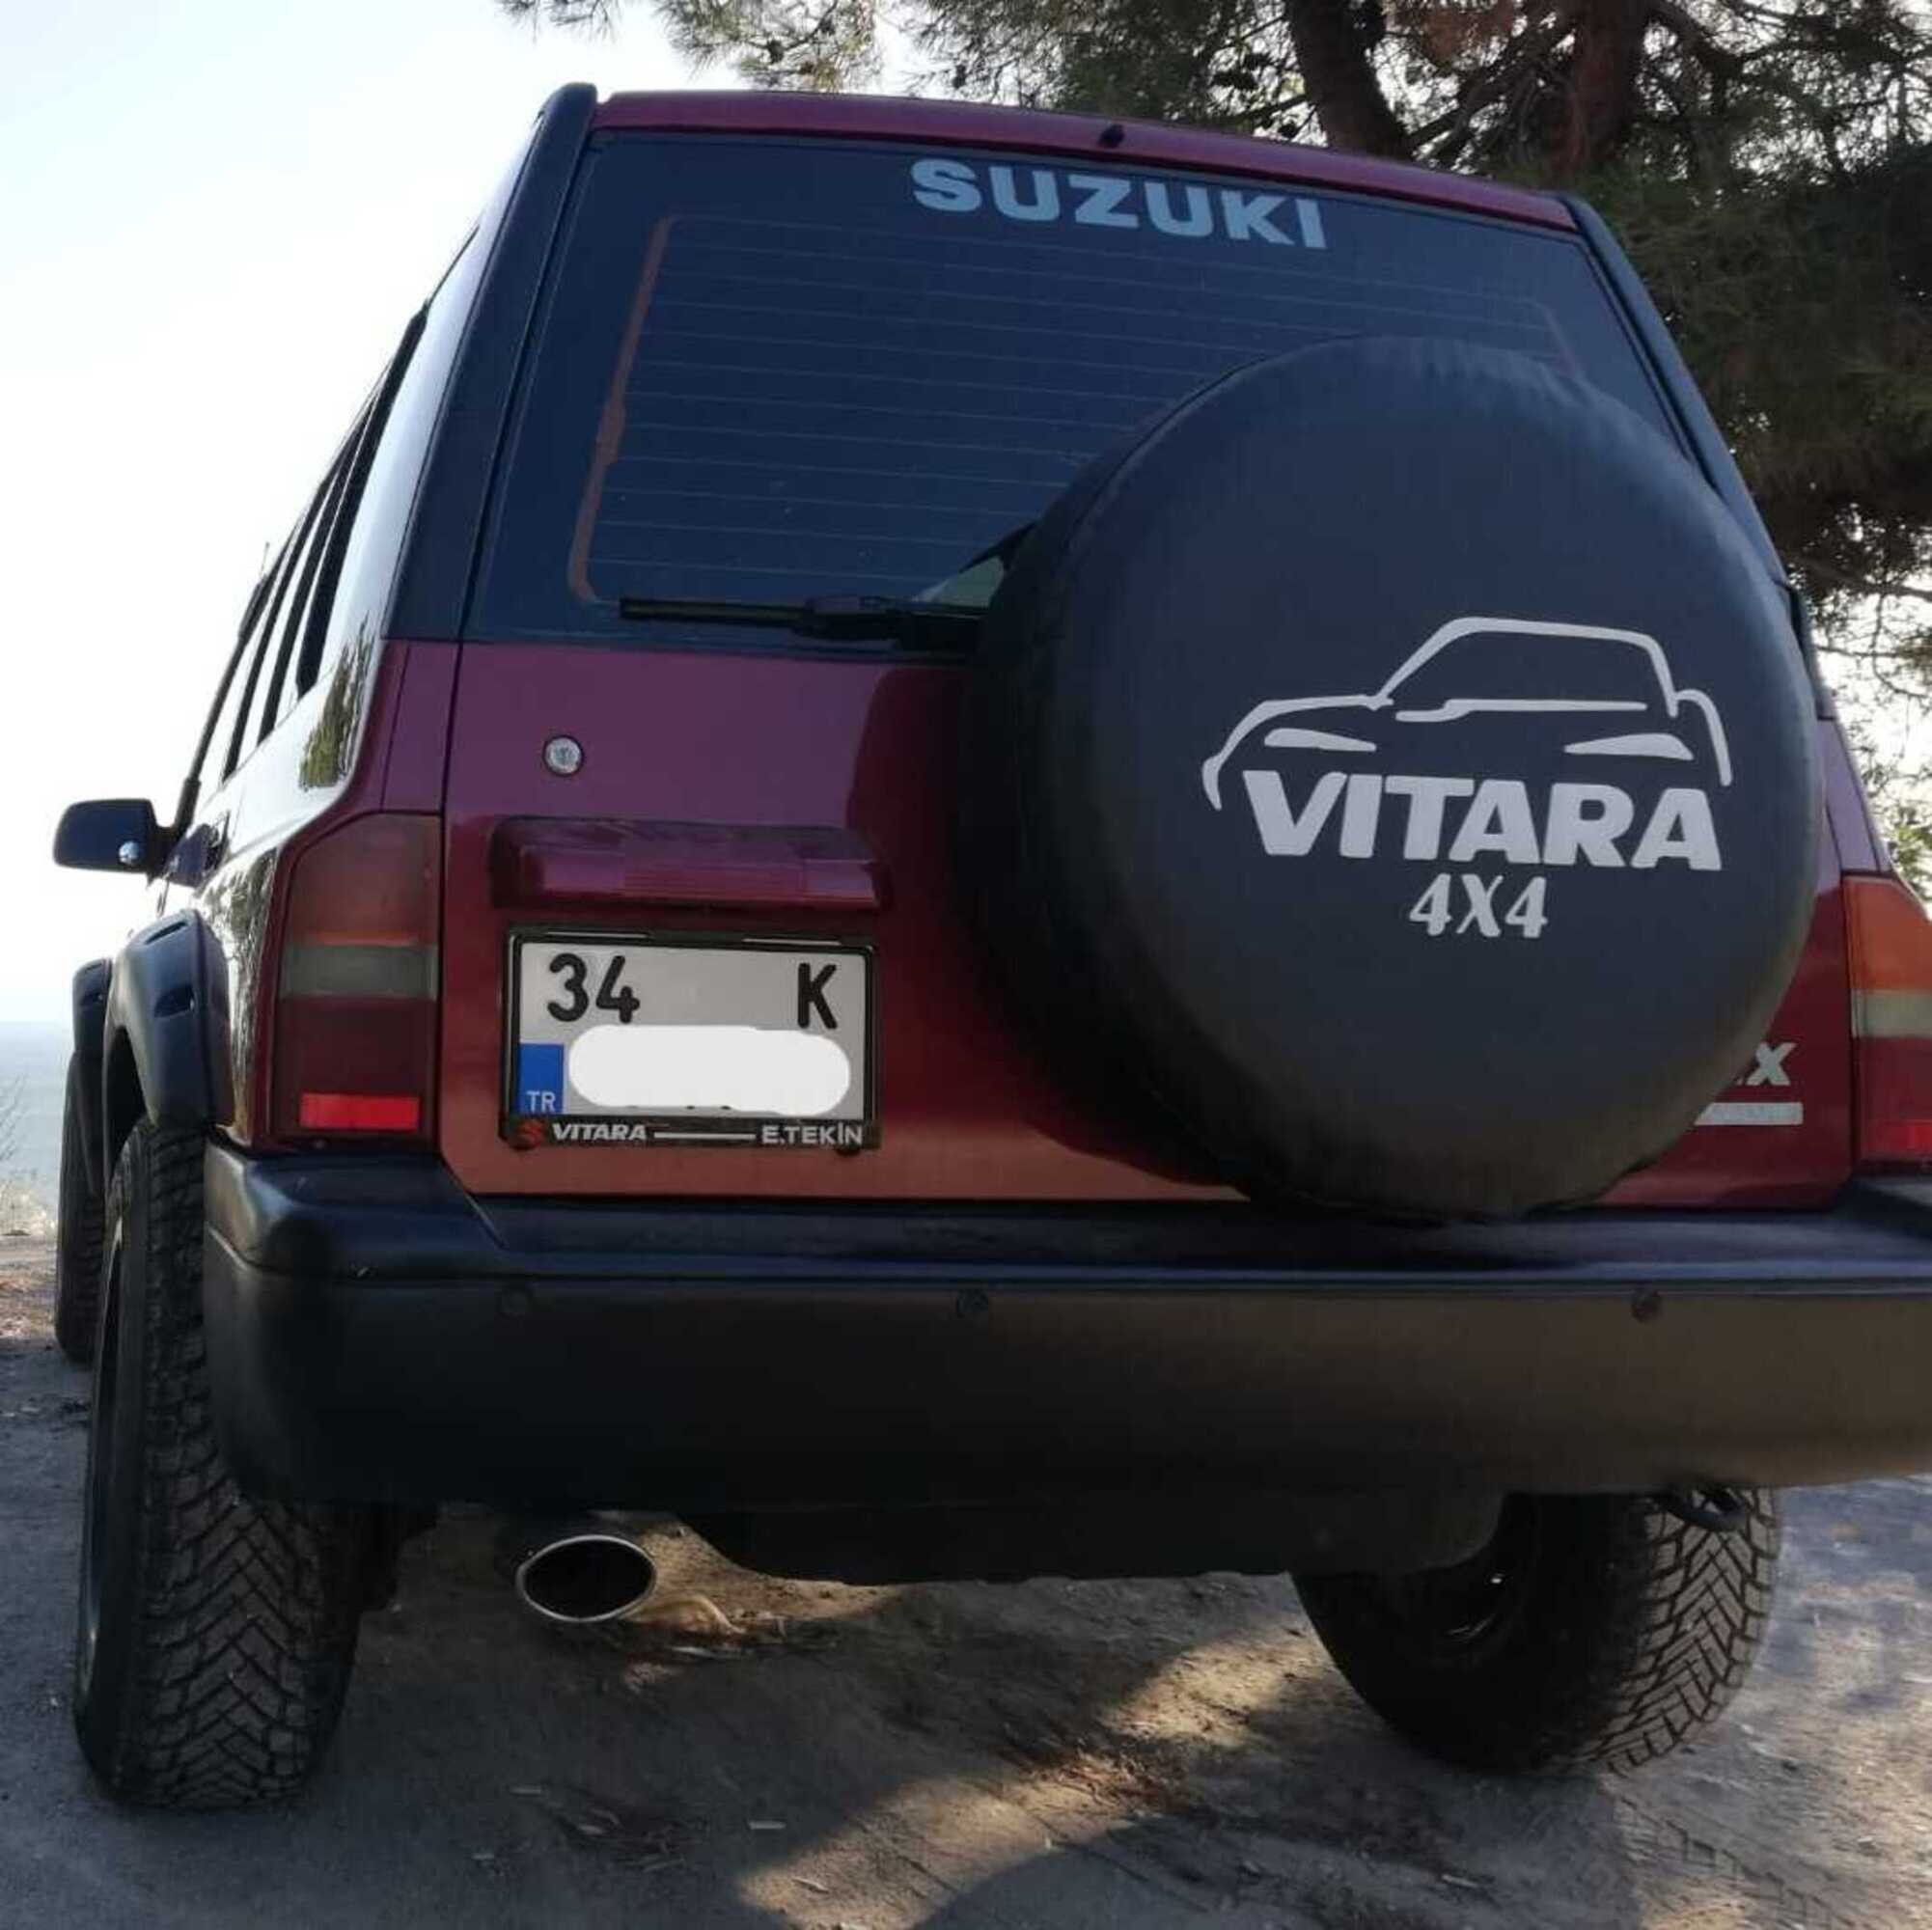 Vitara 4x4 Spare Wheel Tire Cover